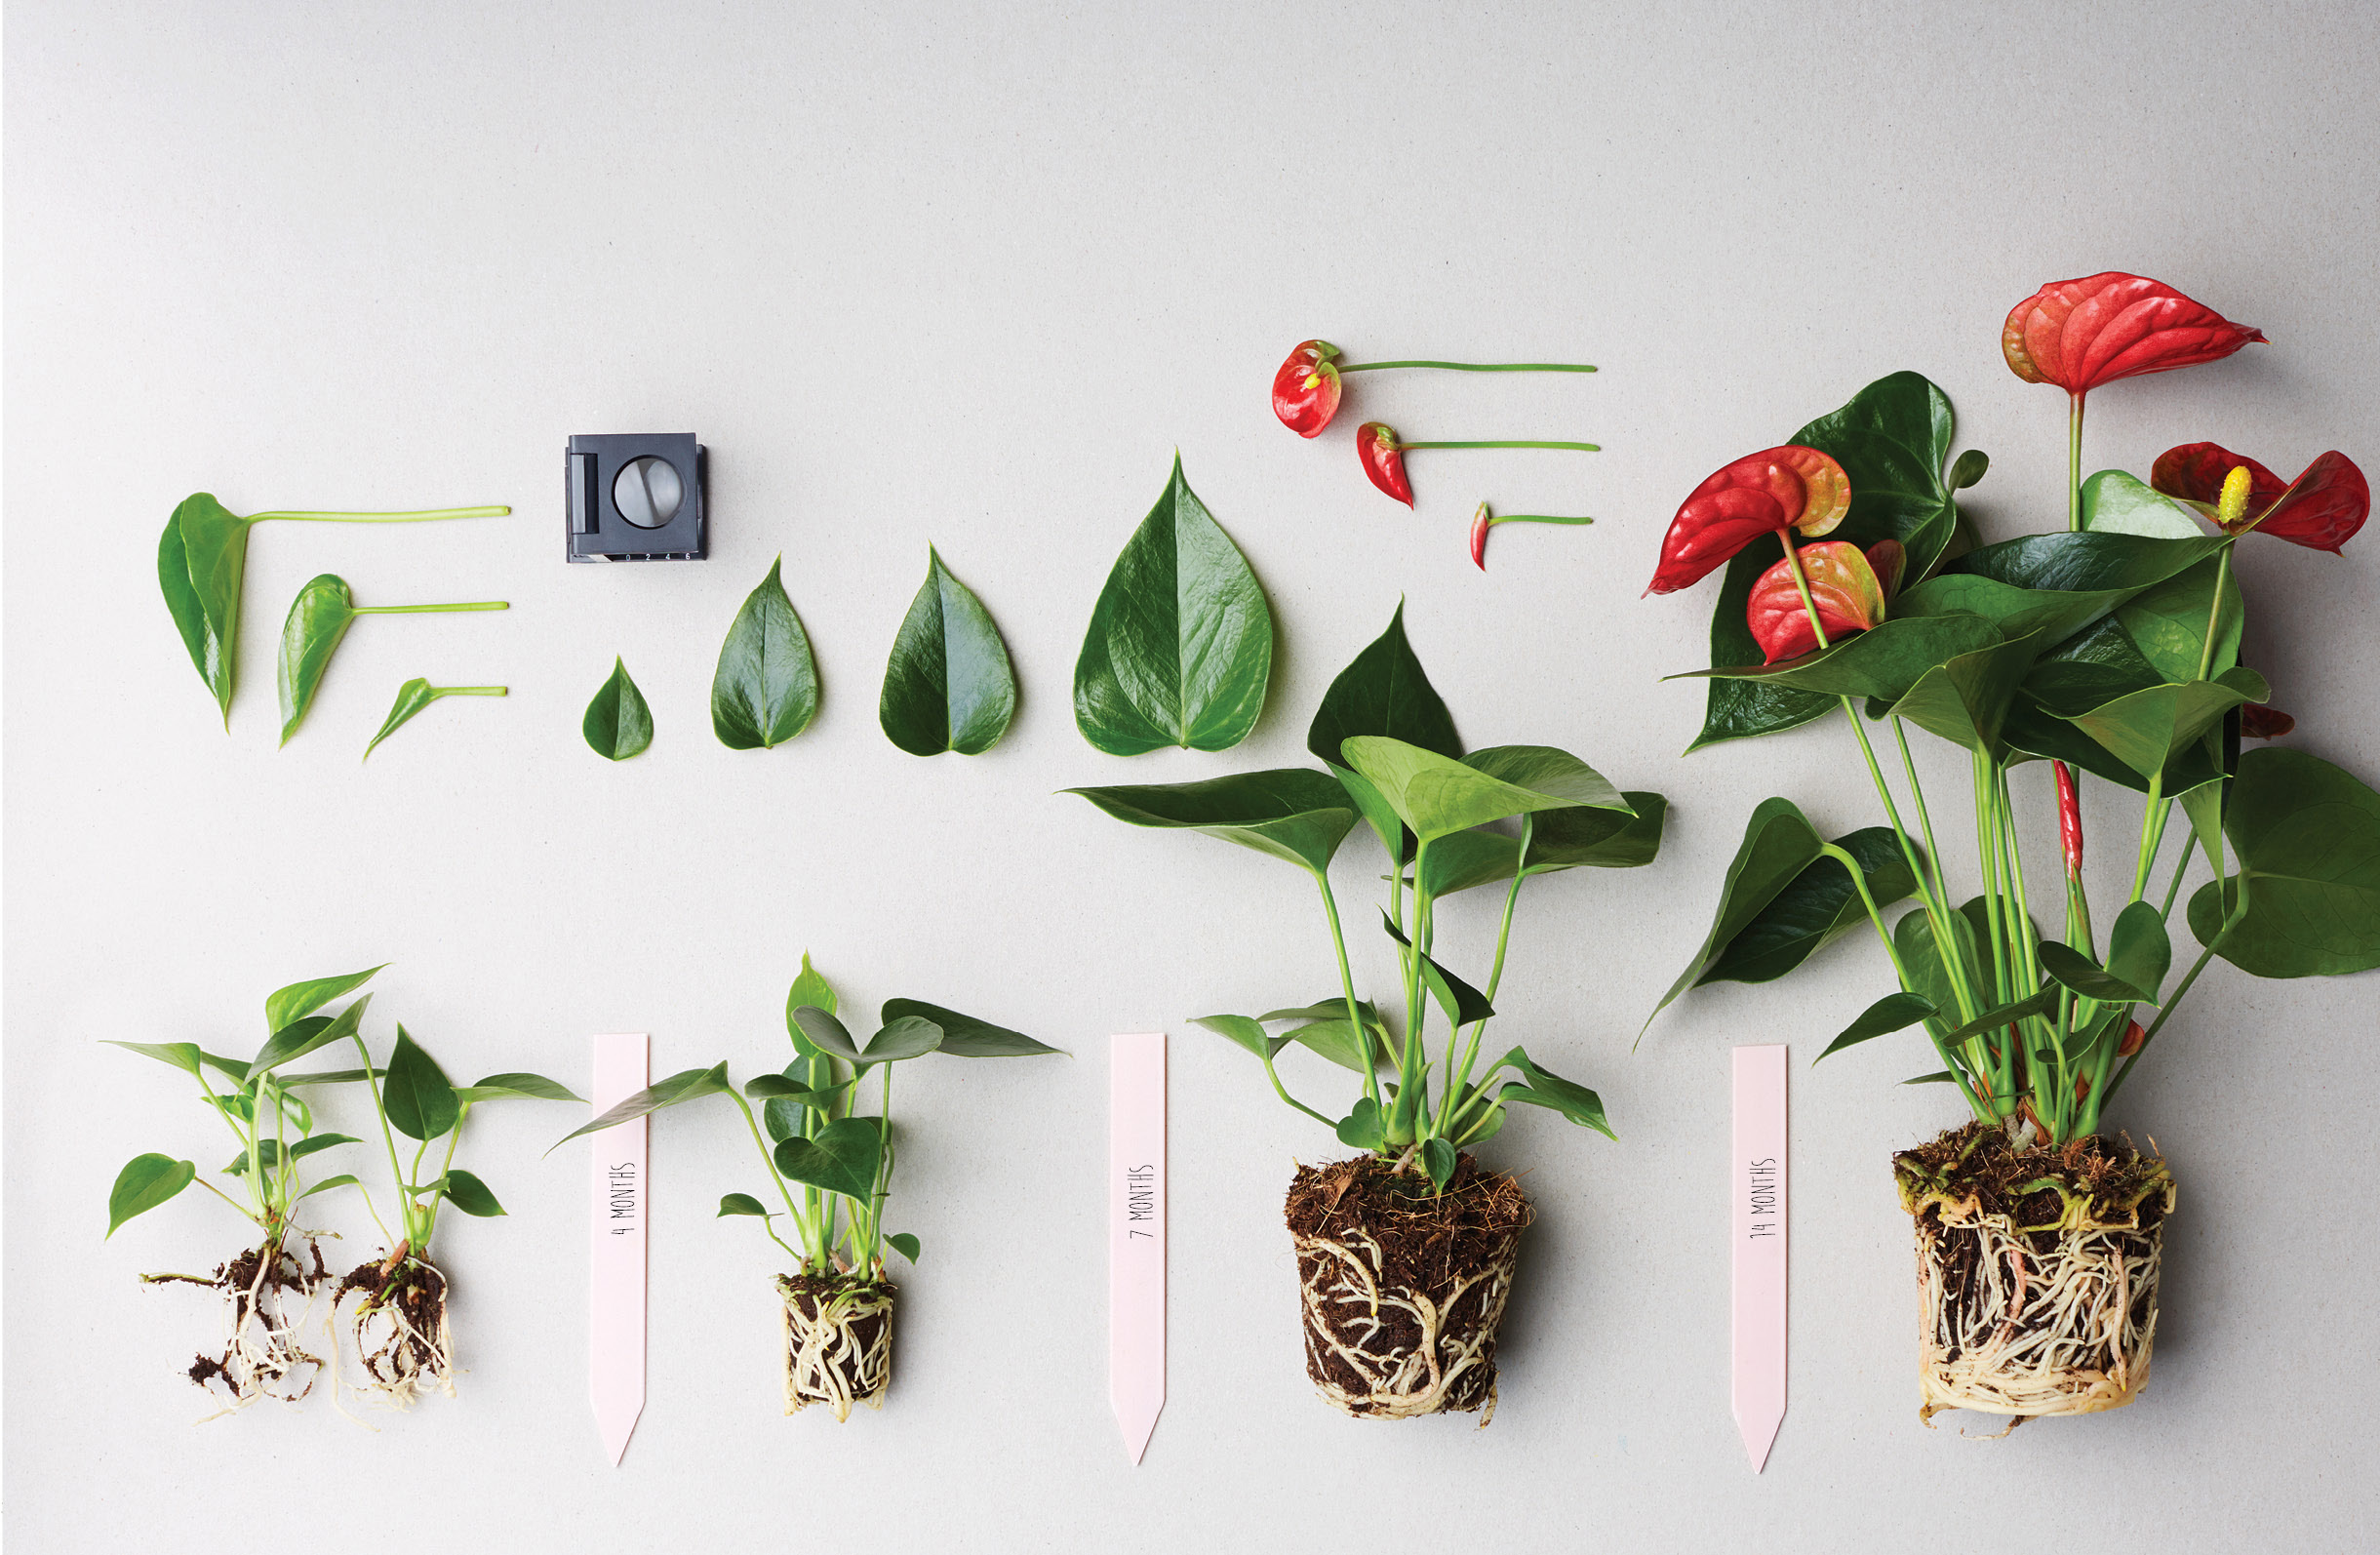 Marvel Uddybe Også How to prune an Anthurium pot plant: a few tips